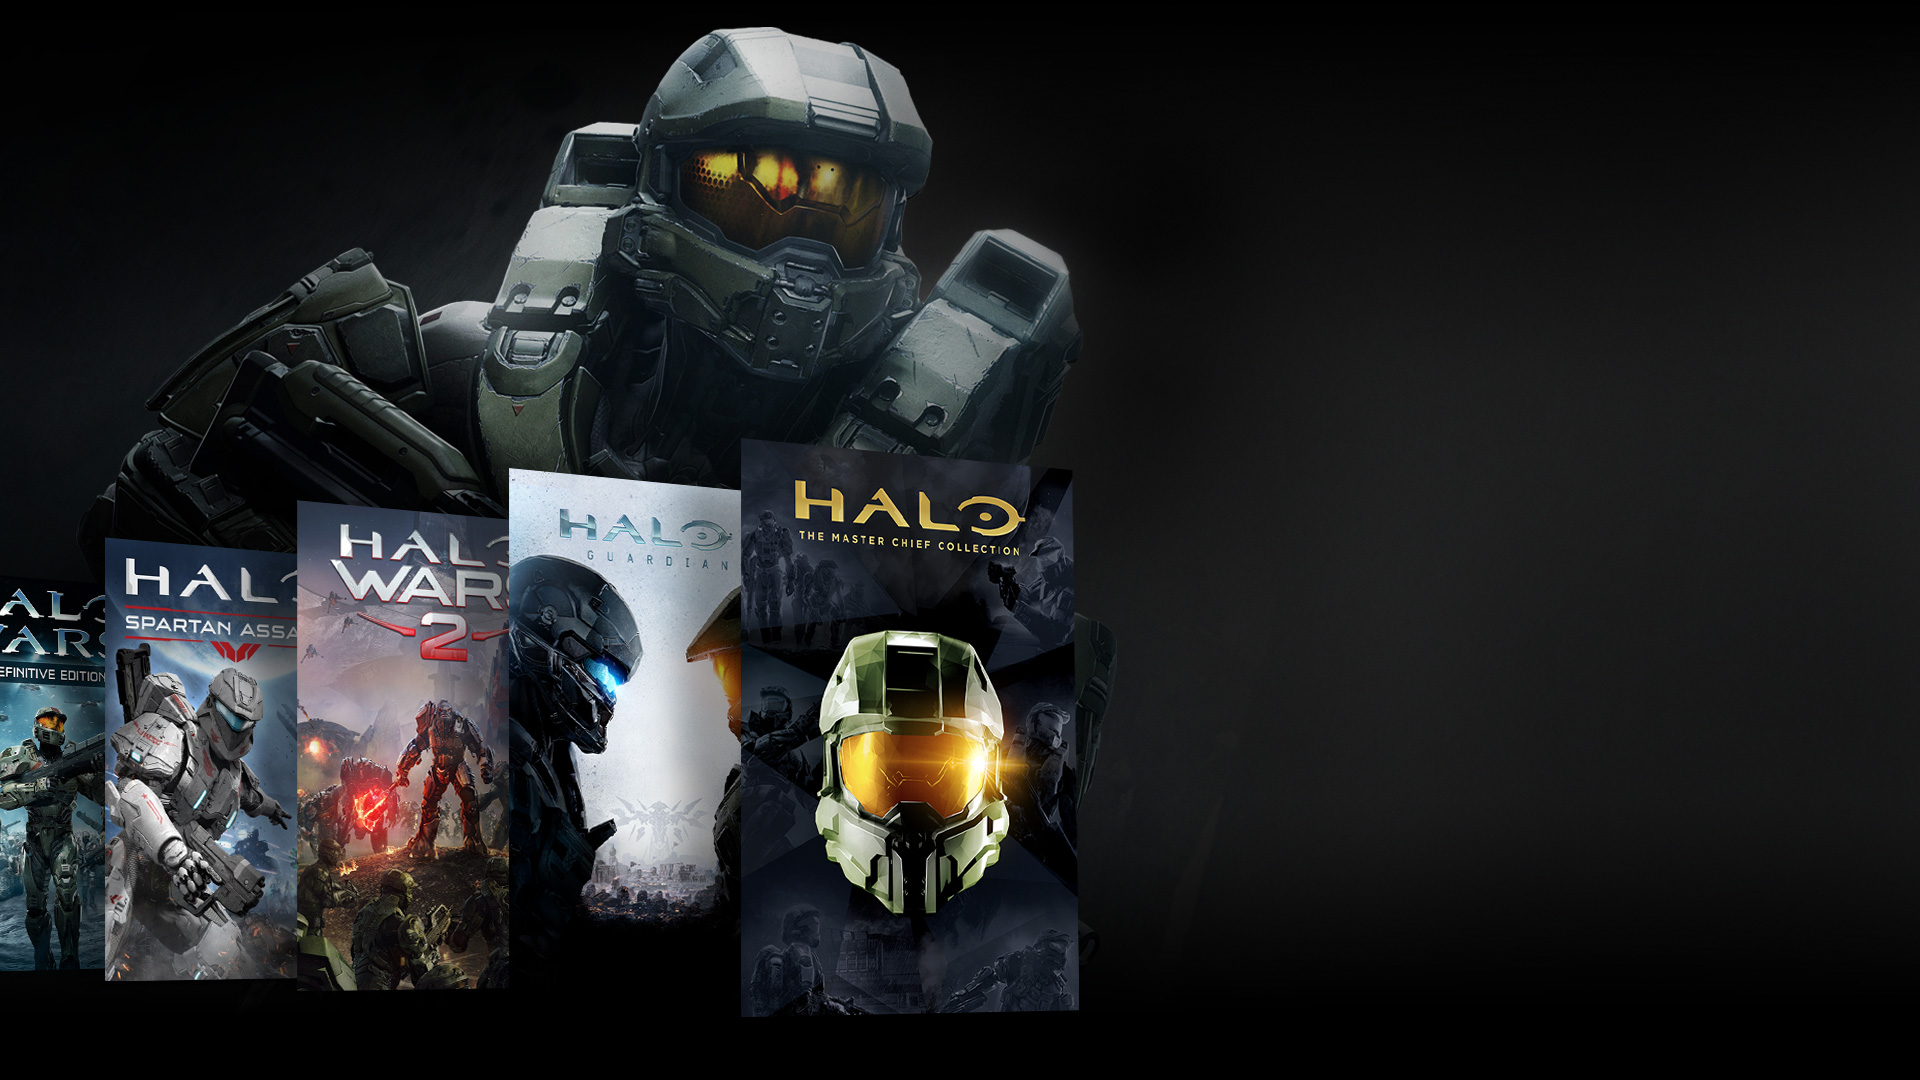 Frontansicht einer Halo-Figur, die hinter einer Collage von Halo-Spielen steht